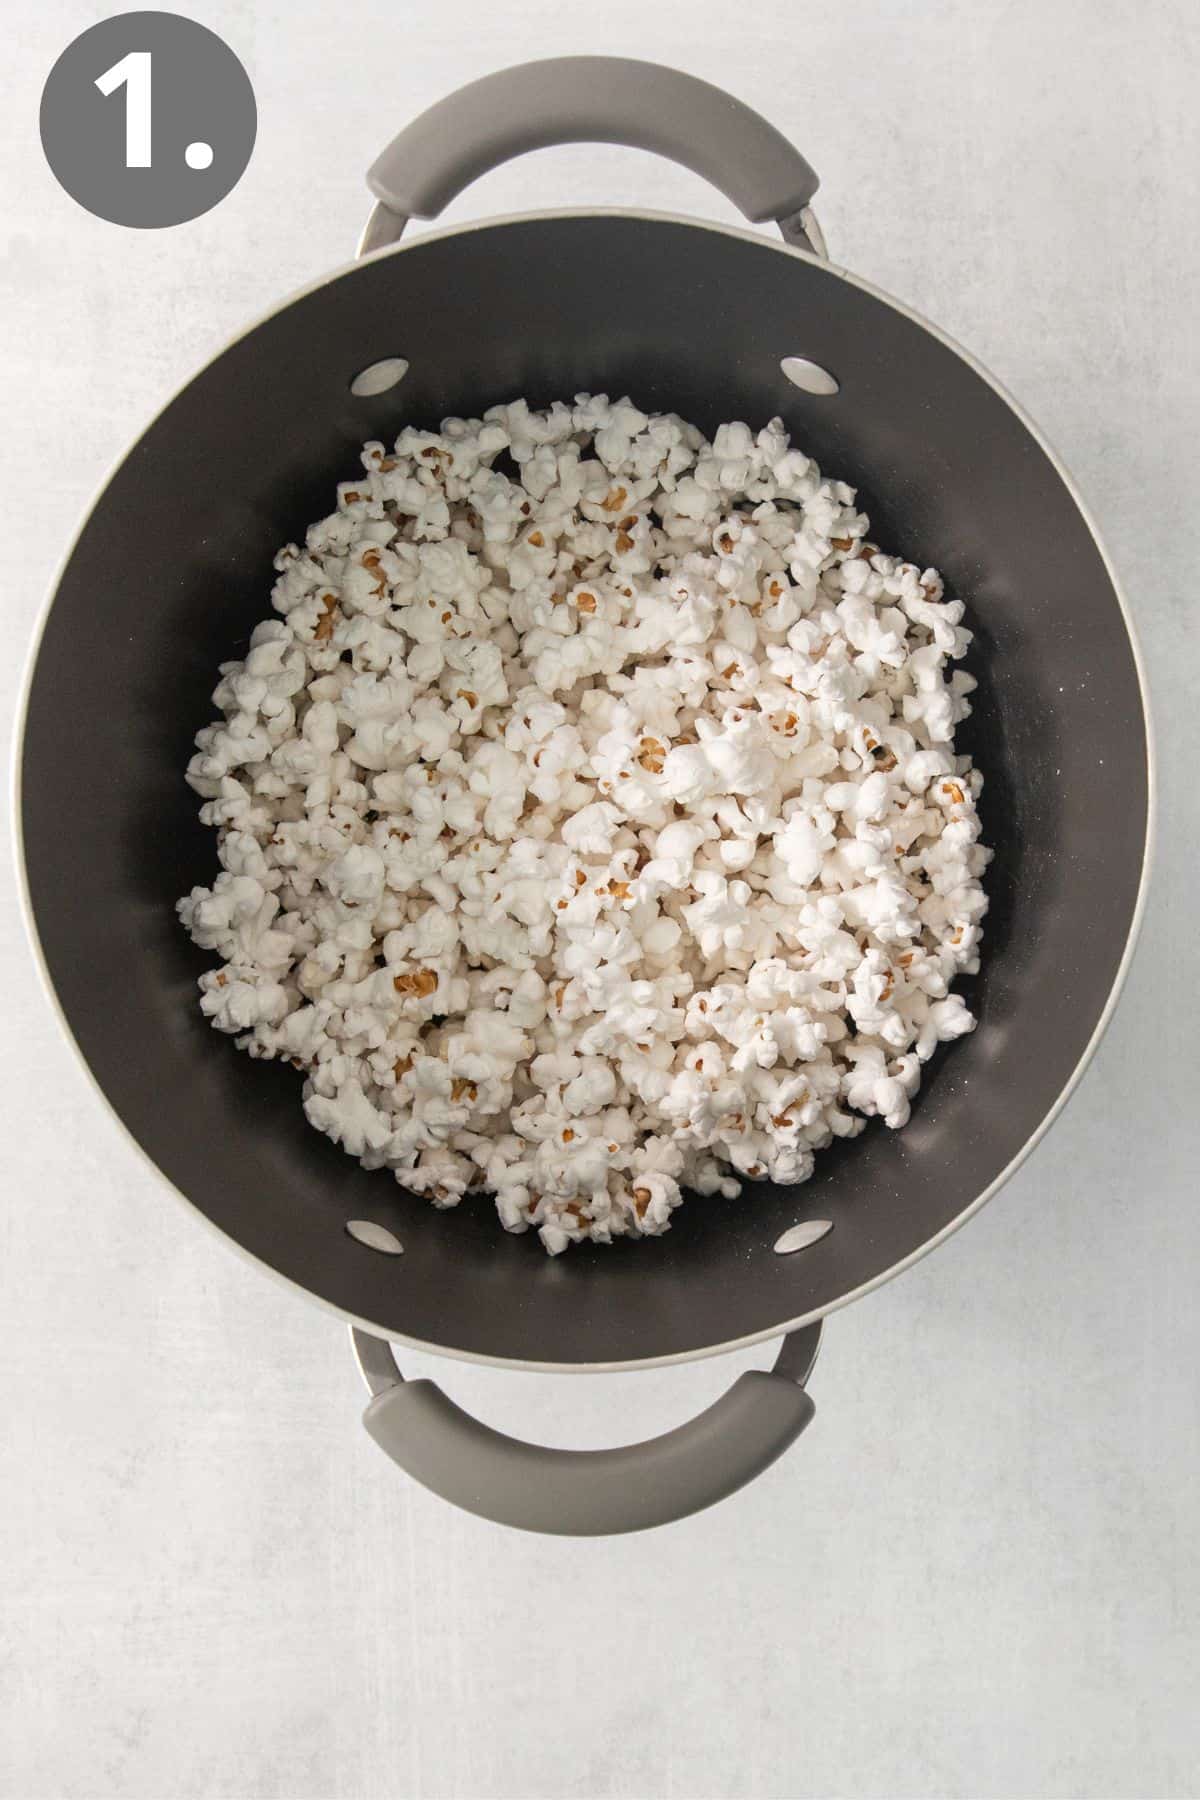 A pot of popped popcorn kernels